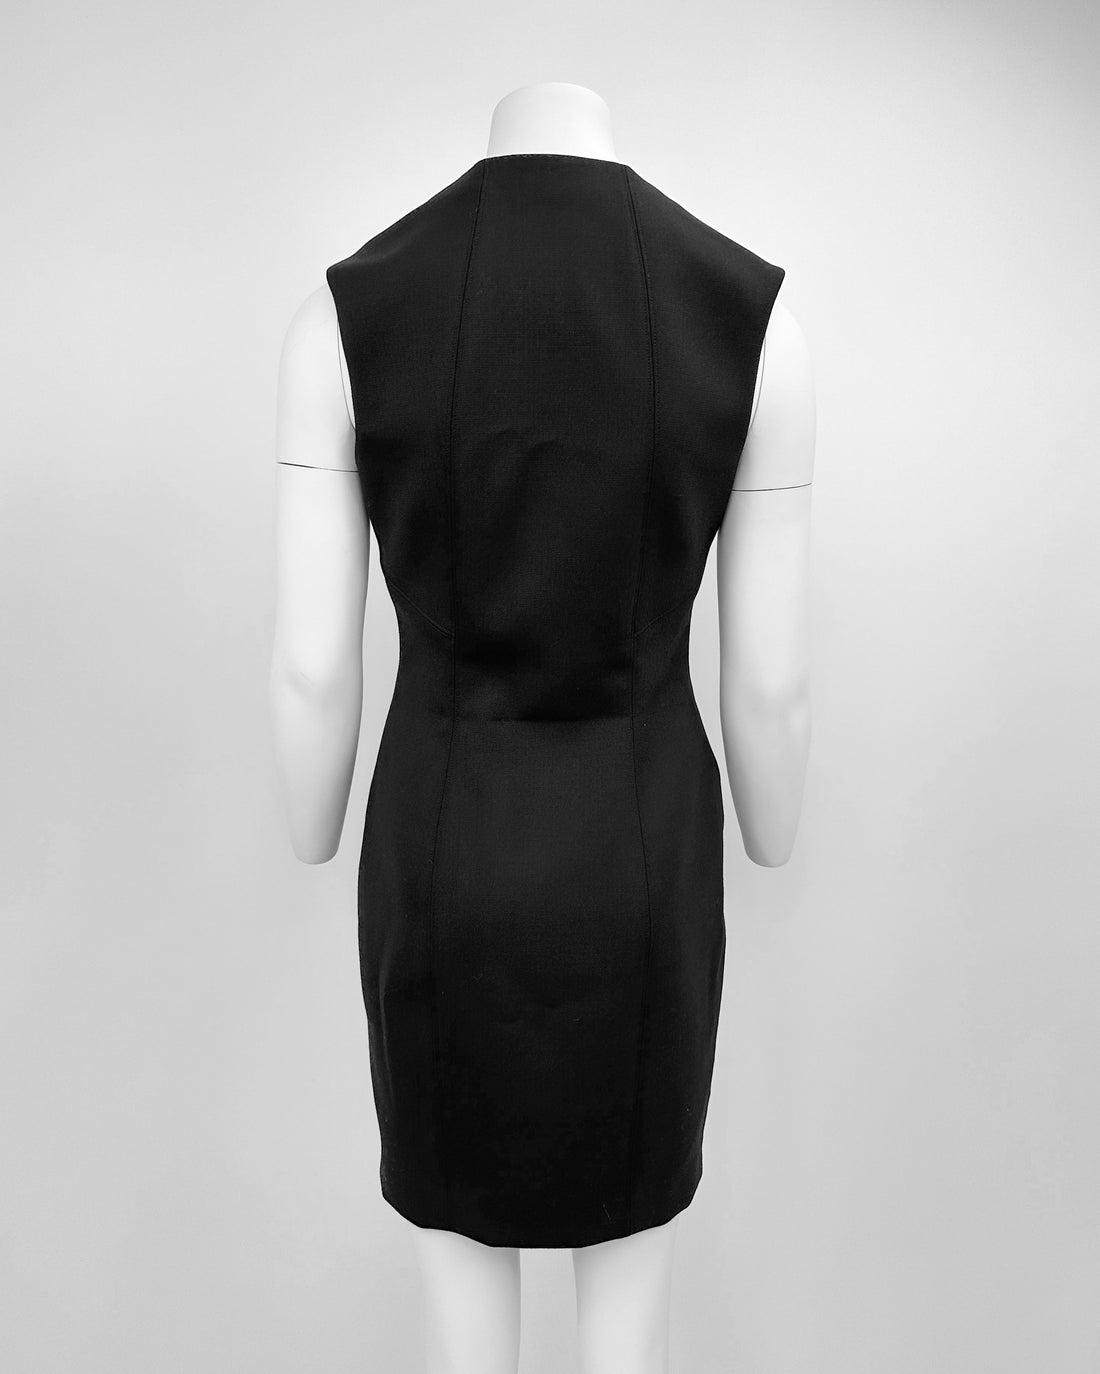 Helmut Lang Full Zipped Black Dress Made in Usa 1990's